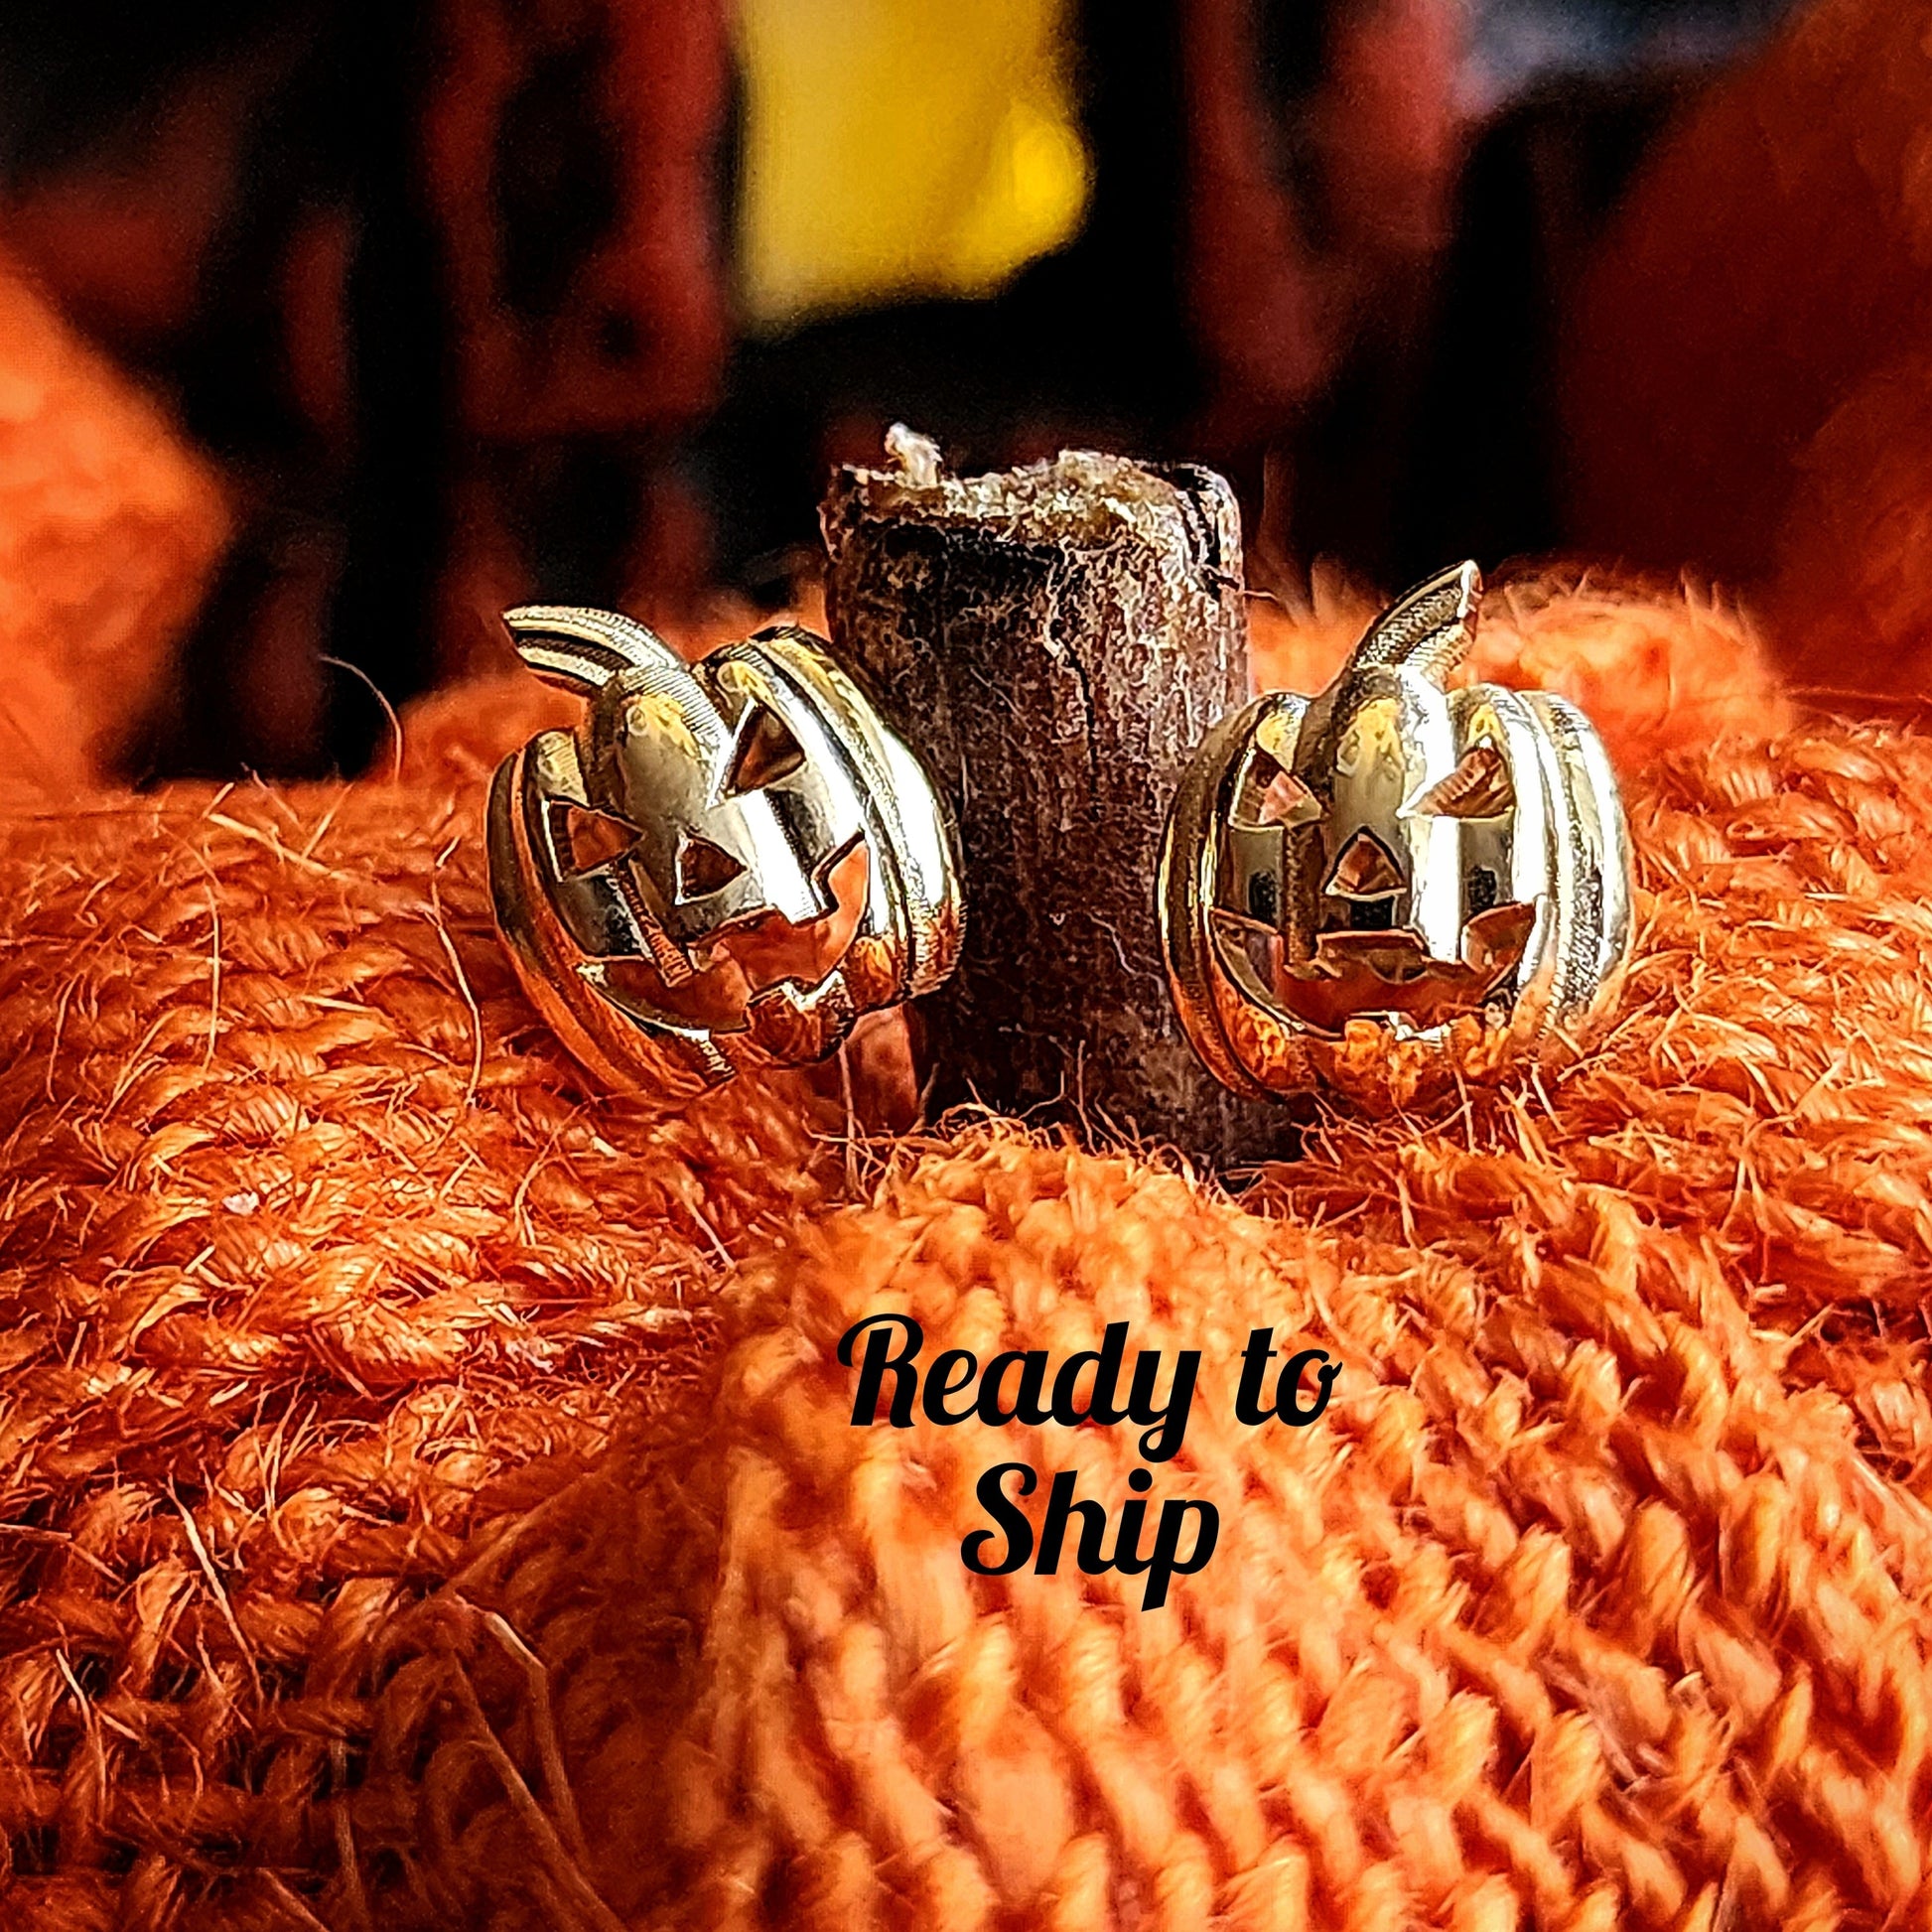 14k gold pumpkin jack o lantern post earrings halloween jewelry by swankmetalsmithing